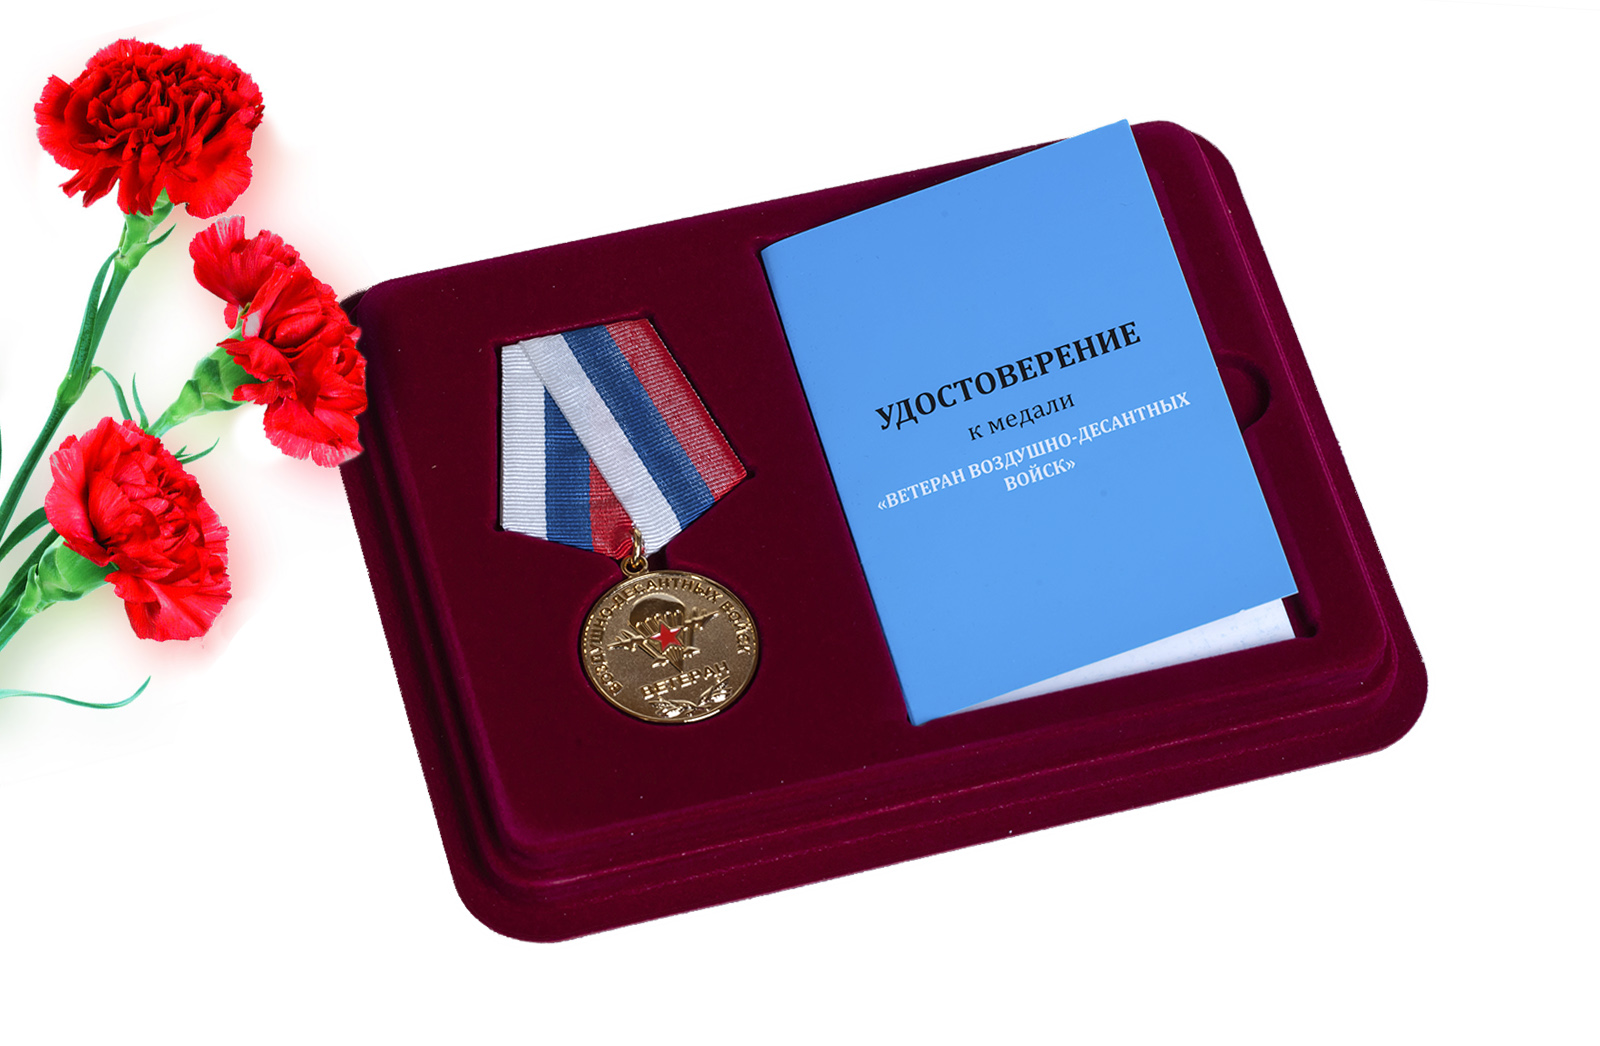 Купить медаль Ветеран Воздушно-десантных войск в подарок